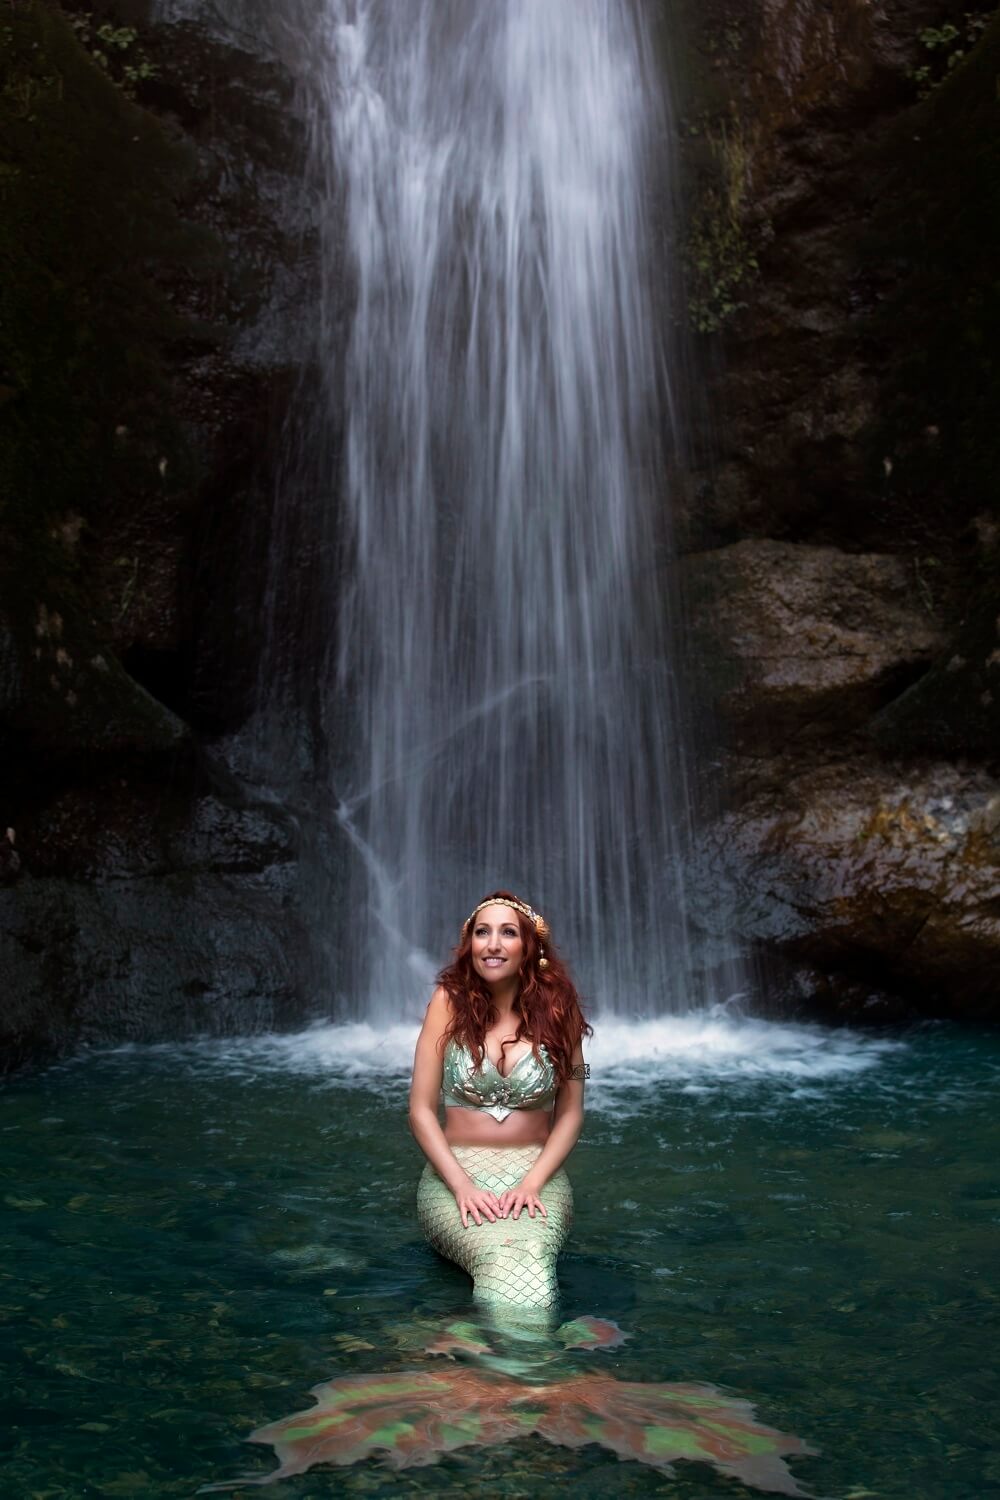 Mermaid sitting in waterfall